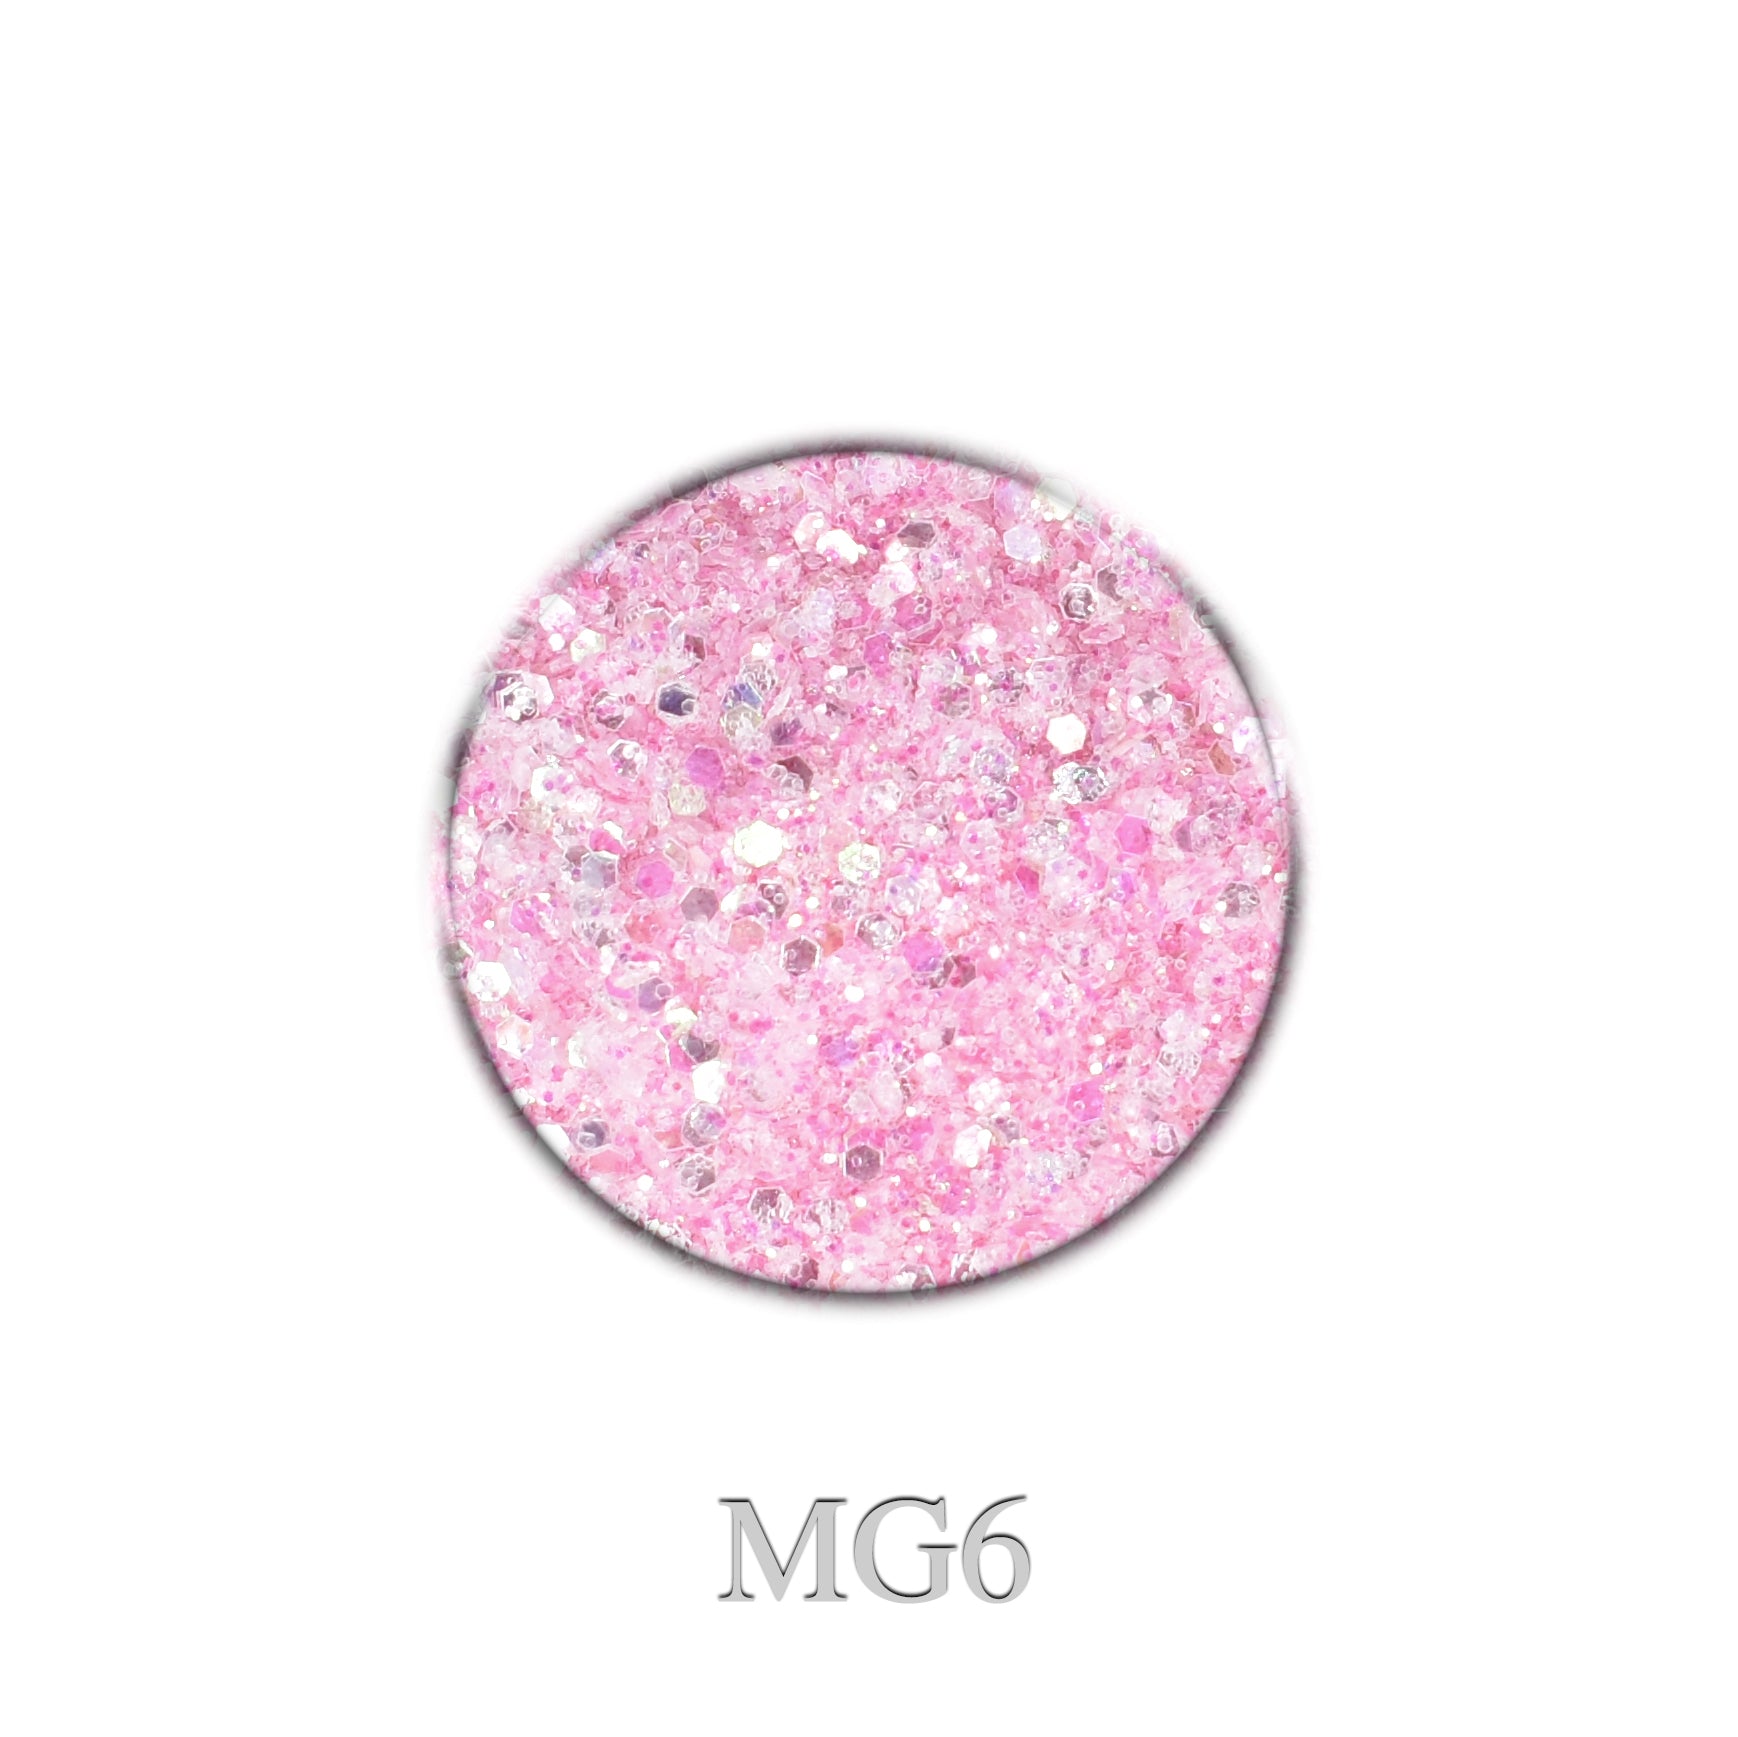 Mermaid Glitter Pink Mix MG6